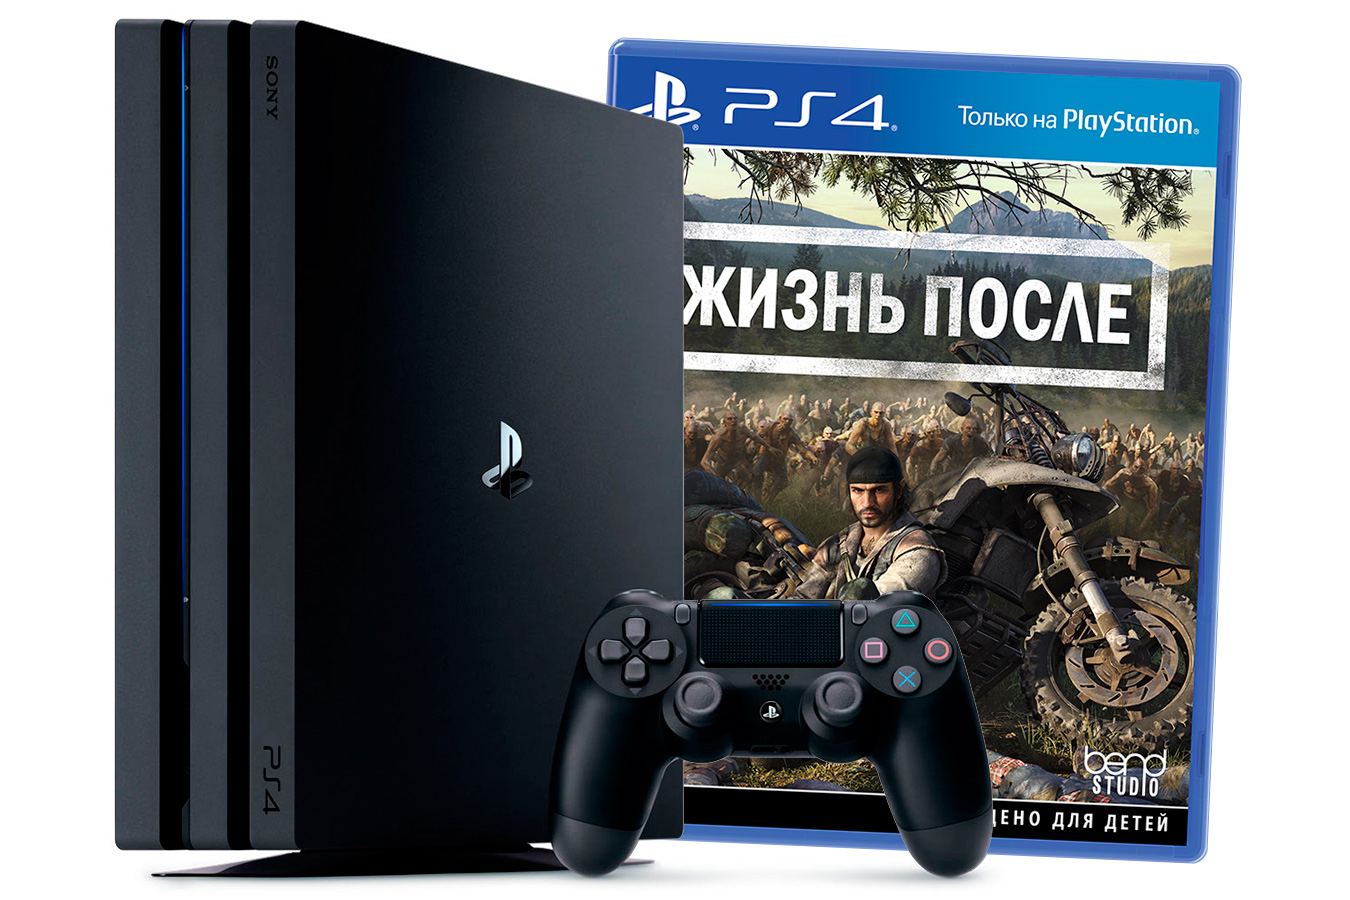 PlayStation 4 Pro приставка с игрой Жизнь После [PS4P1DGO]